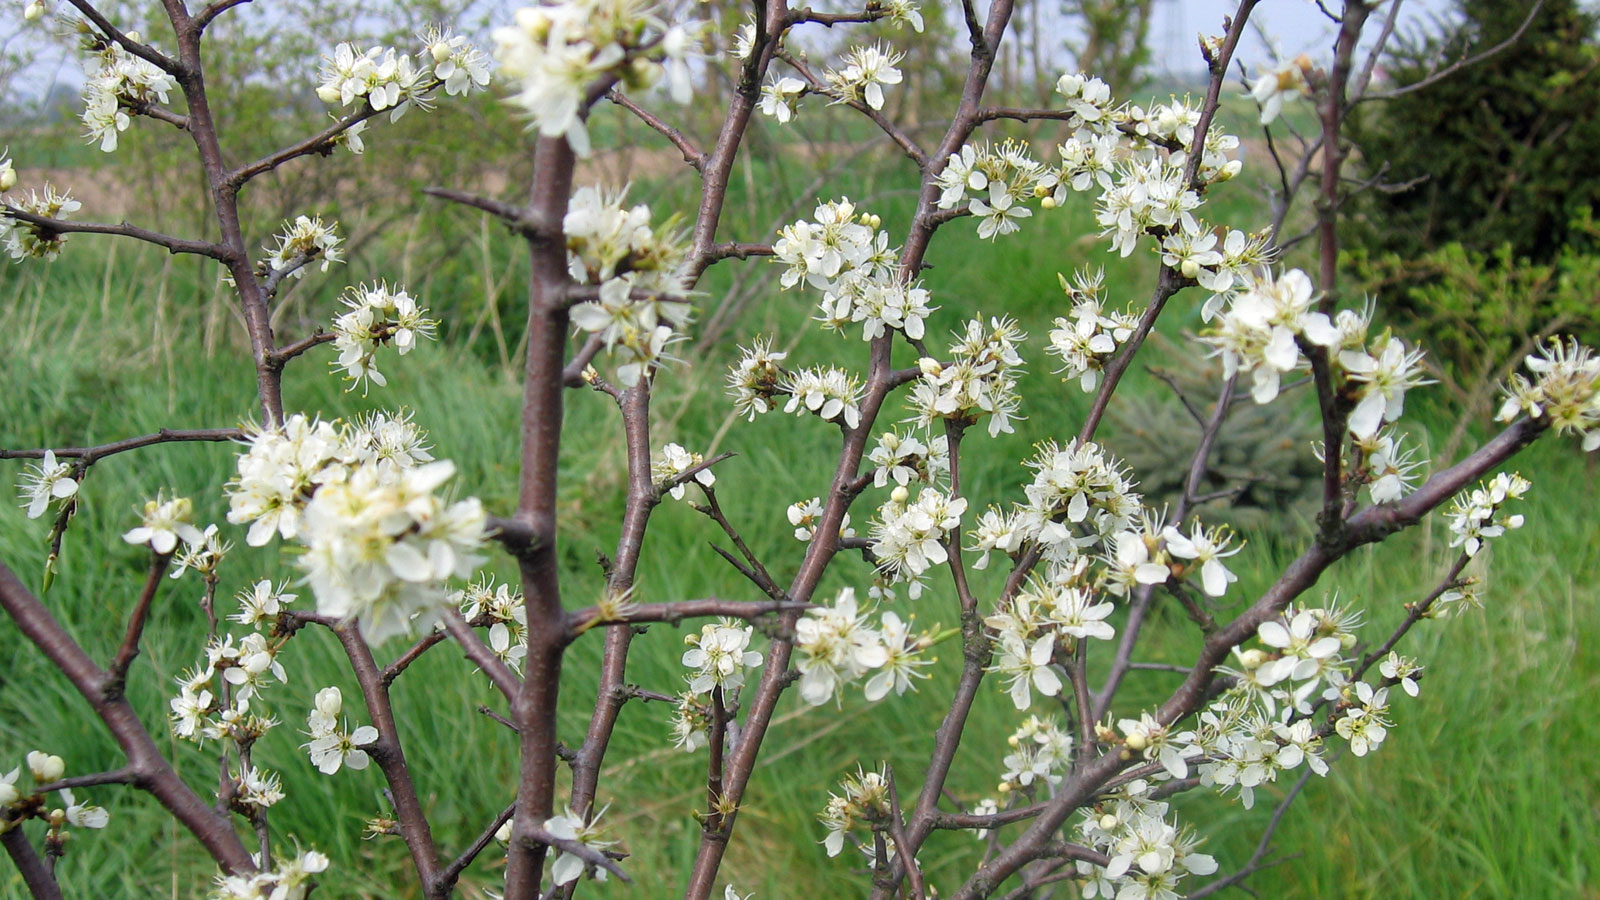 Baum in Blüte